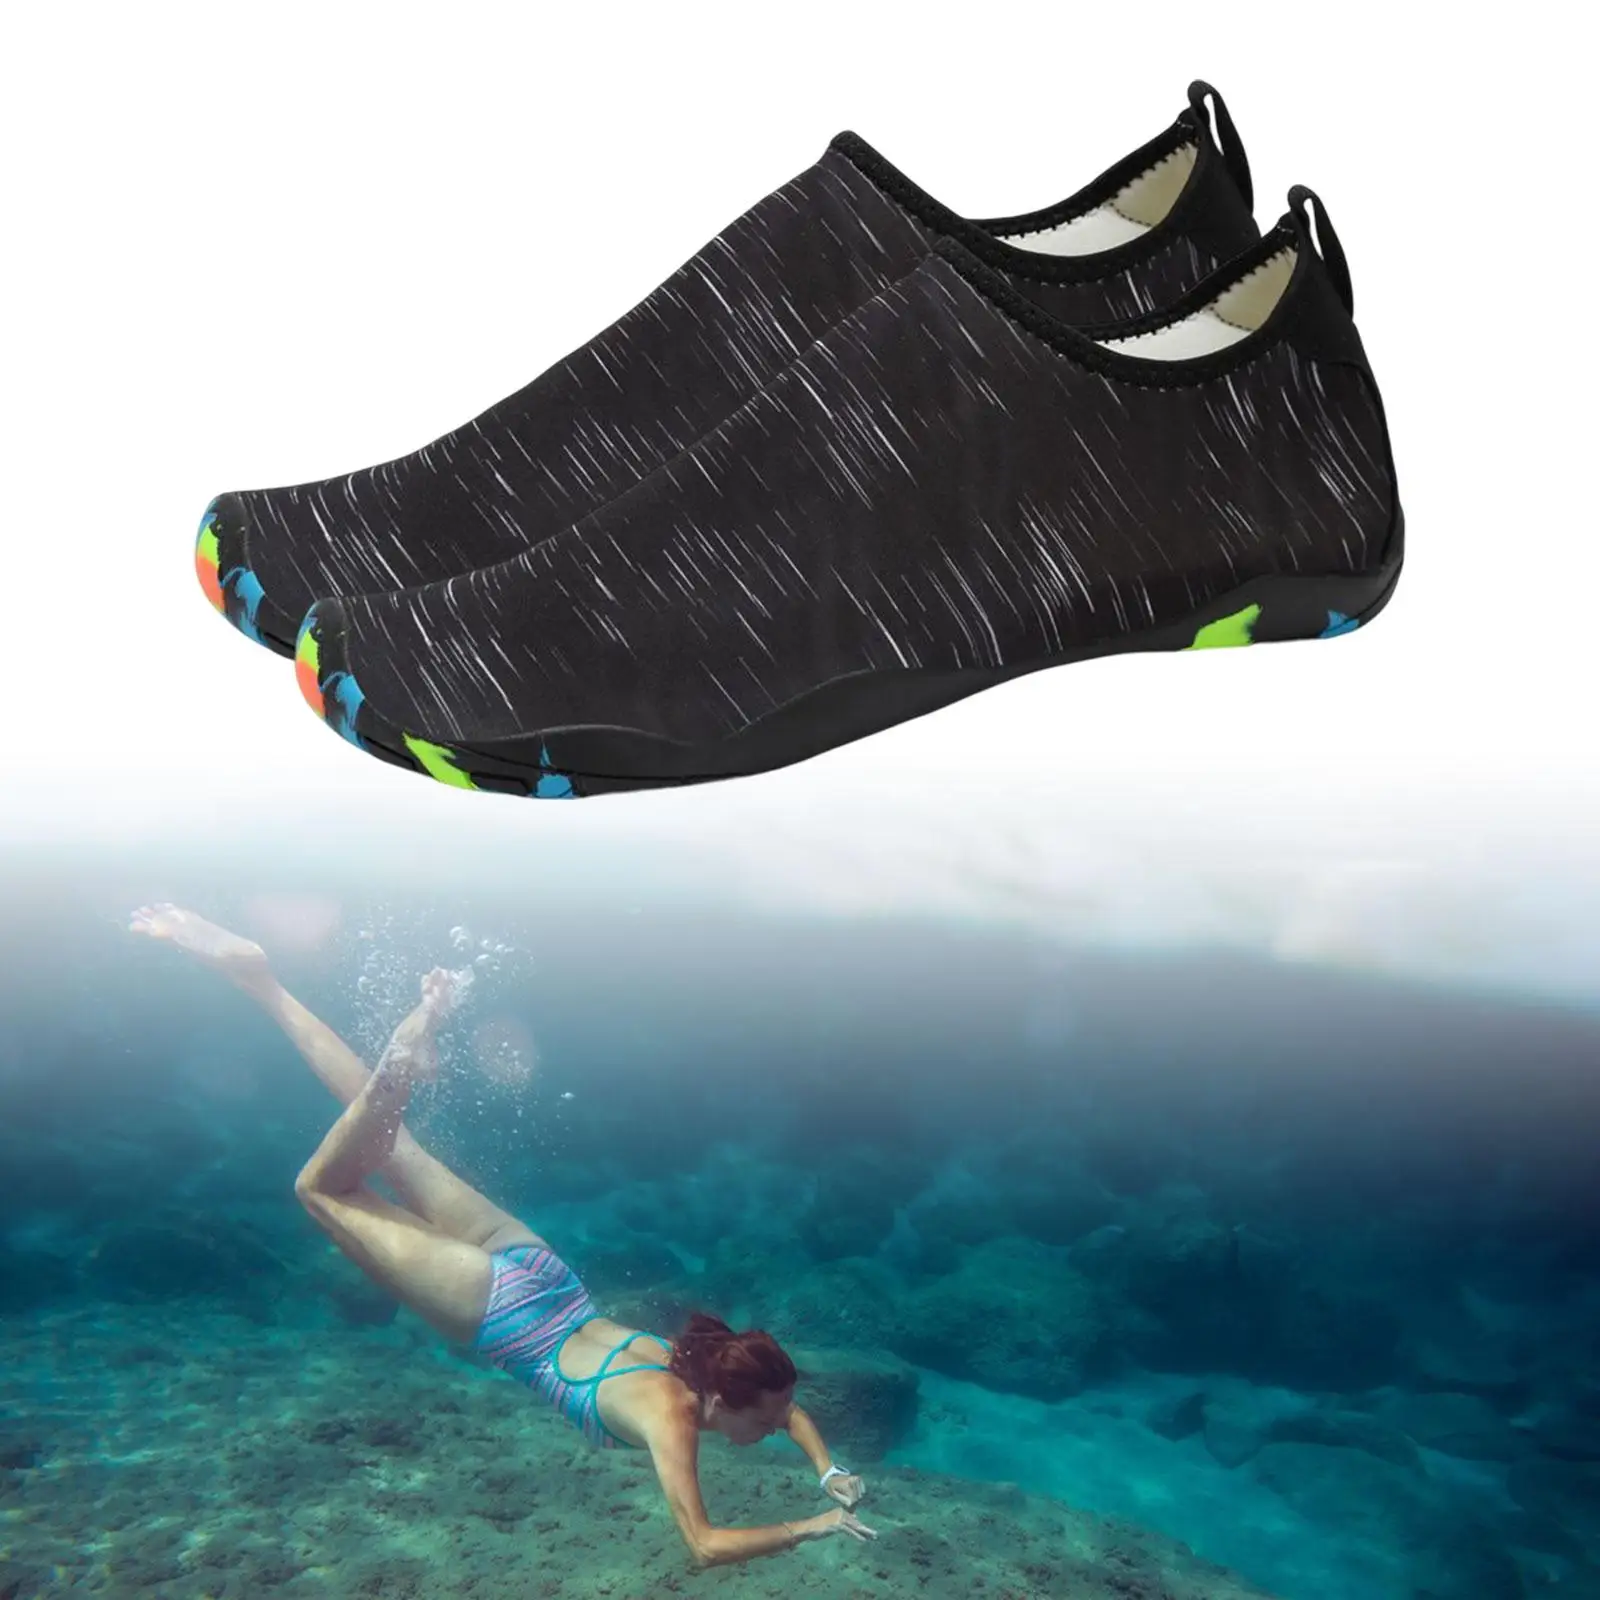 Shoes Waterproof Quick Drying Beach Wear Men Women Water Shoes Water Sports Shoes Women for Swim Yoga Sailing Surfing